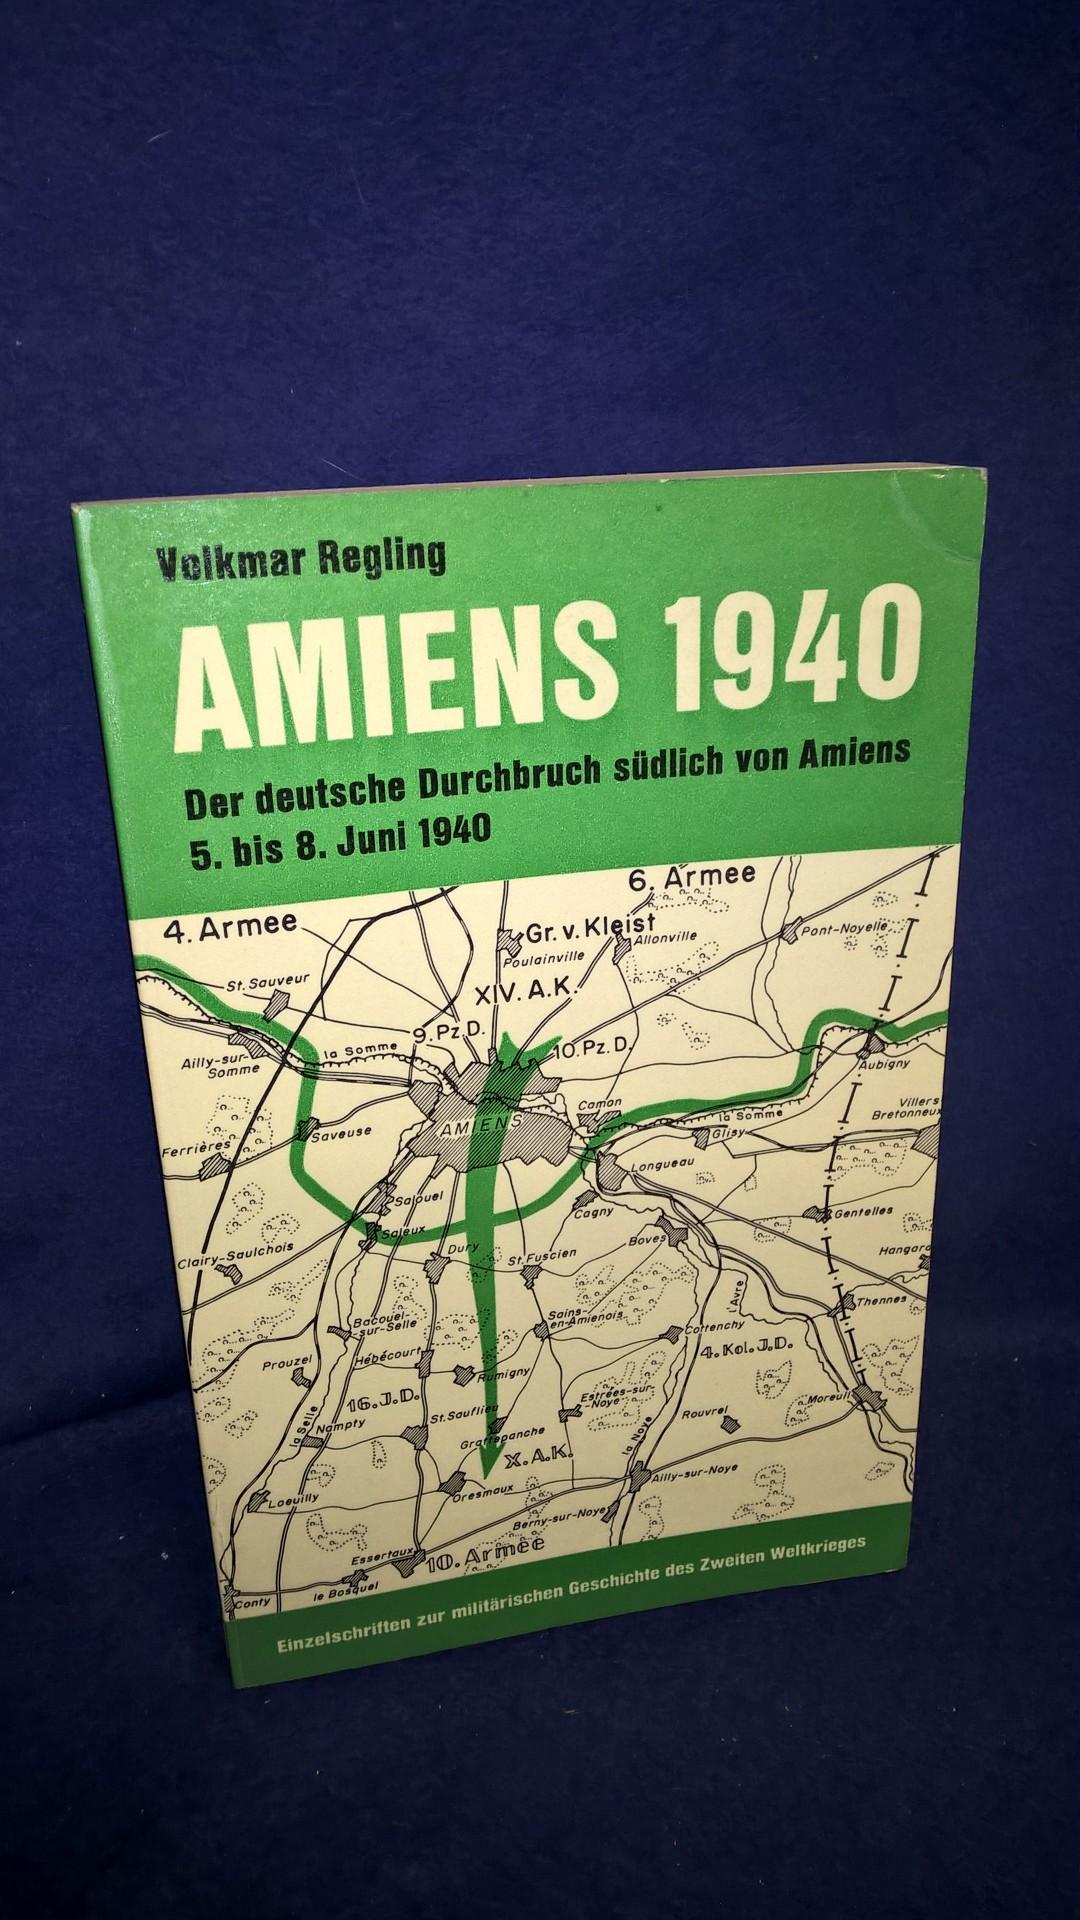 Amiens 1940 - deutscher Durchbruch südlich von Amiens 5. - 8.Juni 1940. Aus der Reihe: Einzelschriften zur Militärischen Geschichte des 2.Weltkrieges - Band 2: 